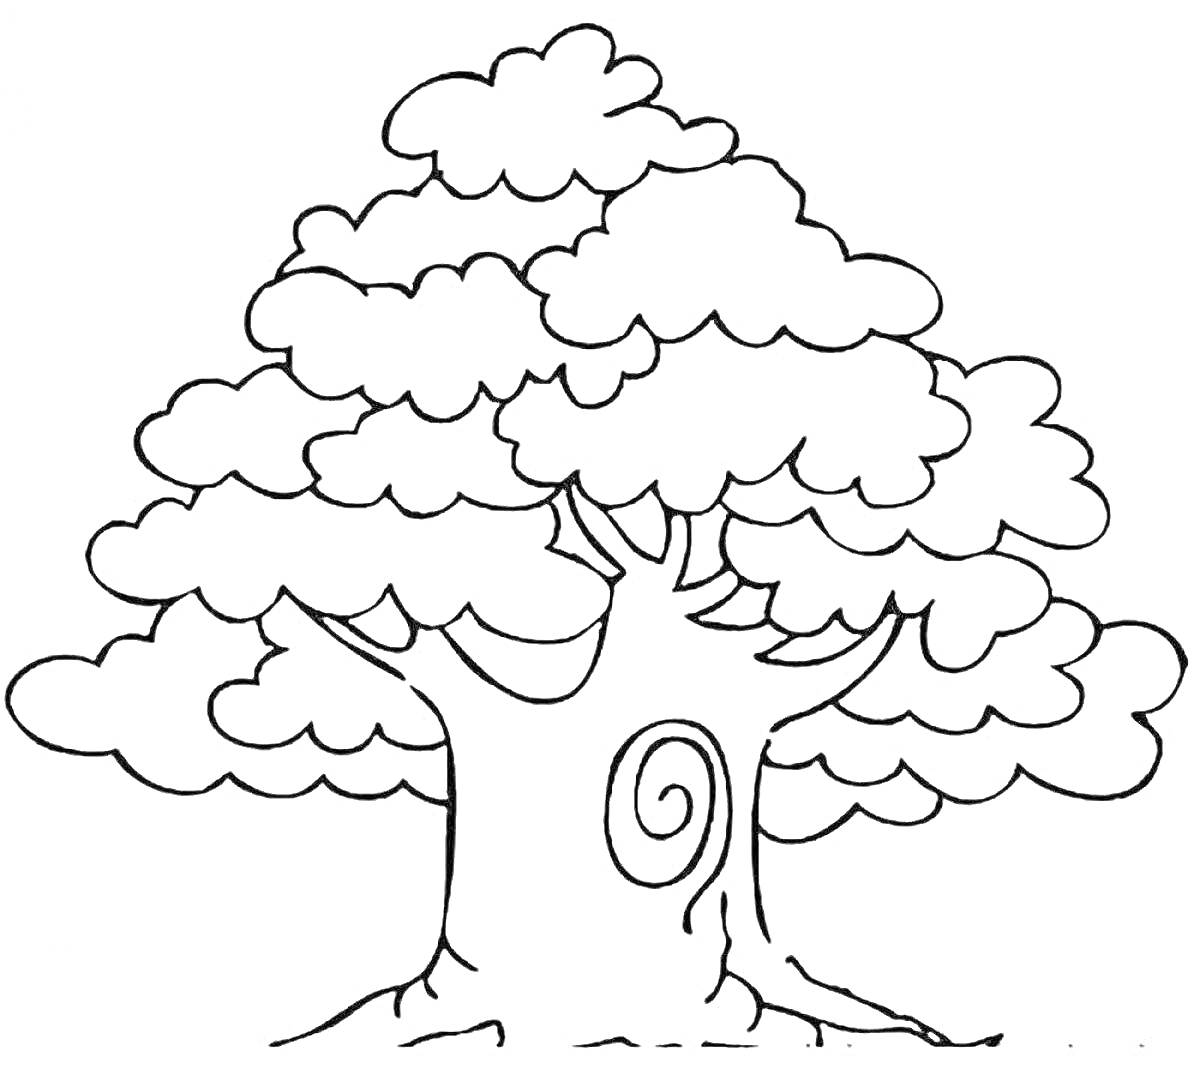 Раскраска Дерево с витками в кроне и декоративным элементом на стволе